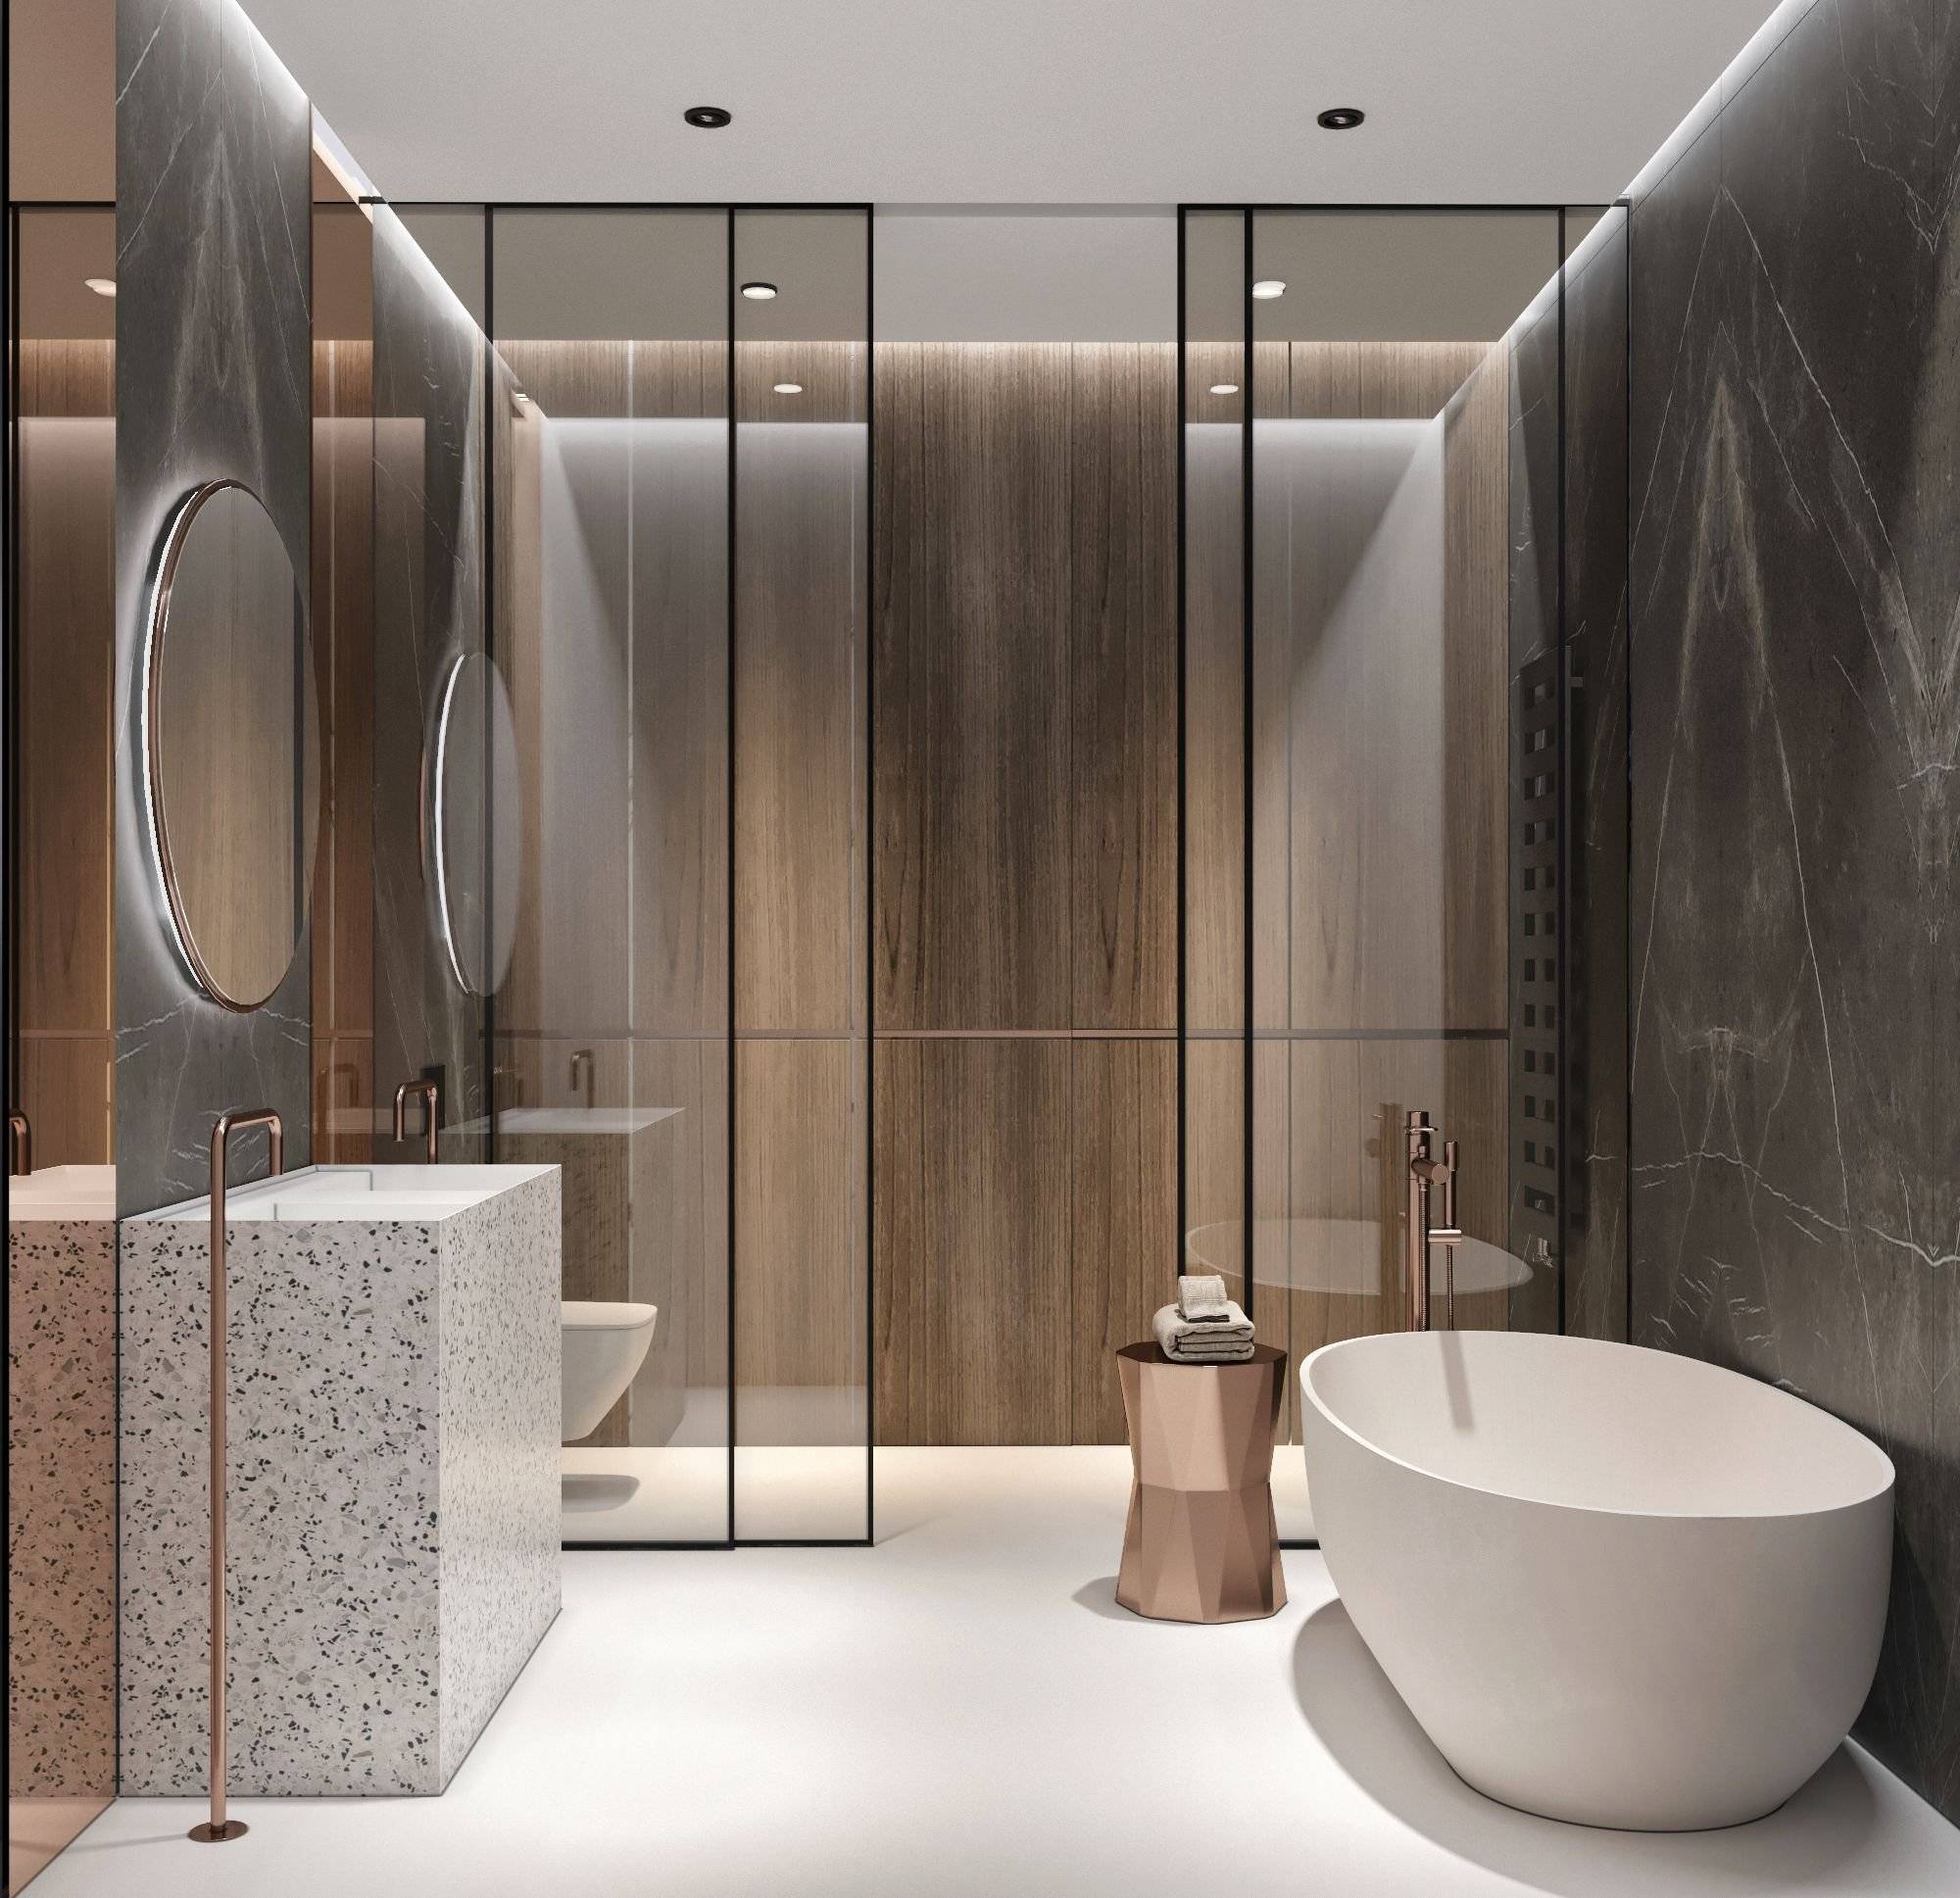  дизайн ванной комнаты, фото интерьеров модерн